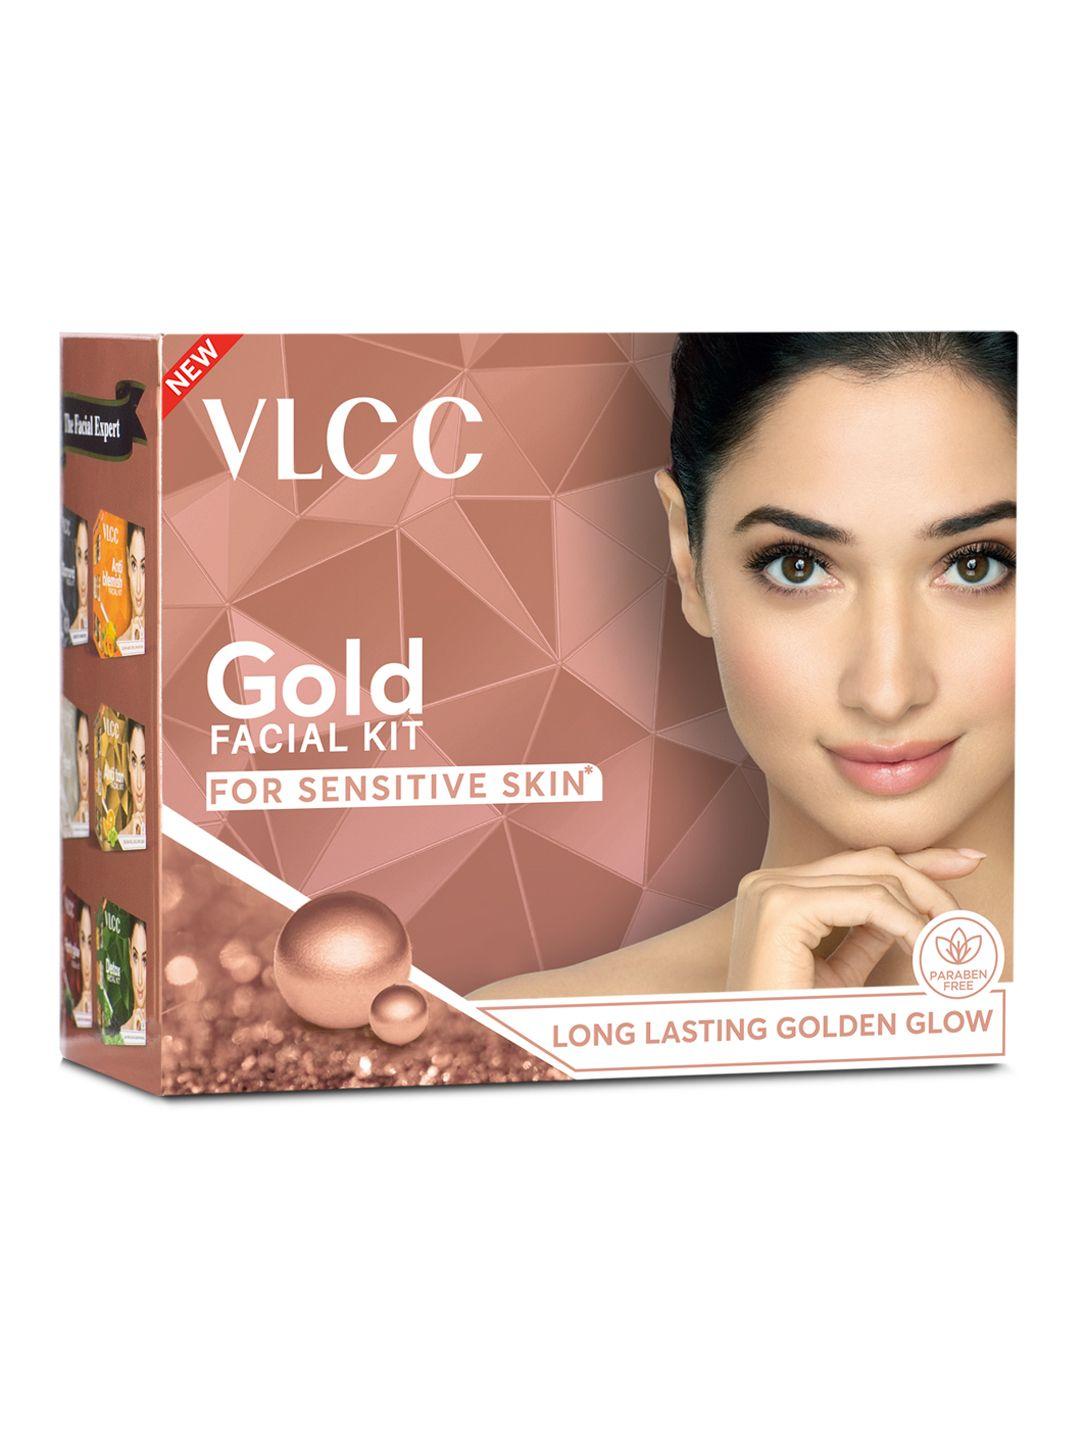 vlcc gold facial kit for sensitive skin - 10 g each